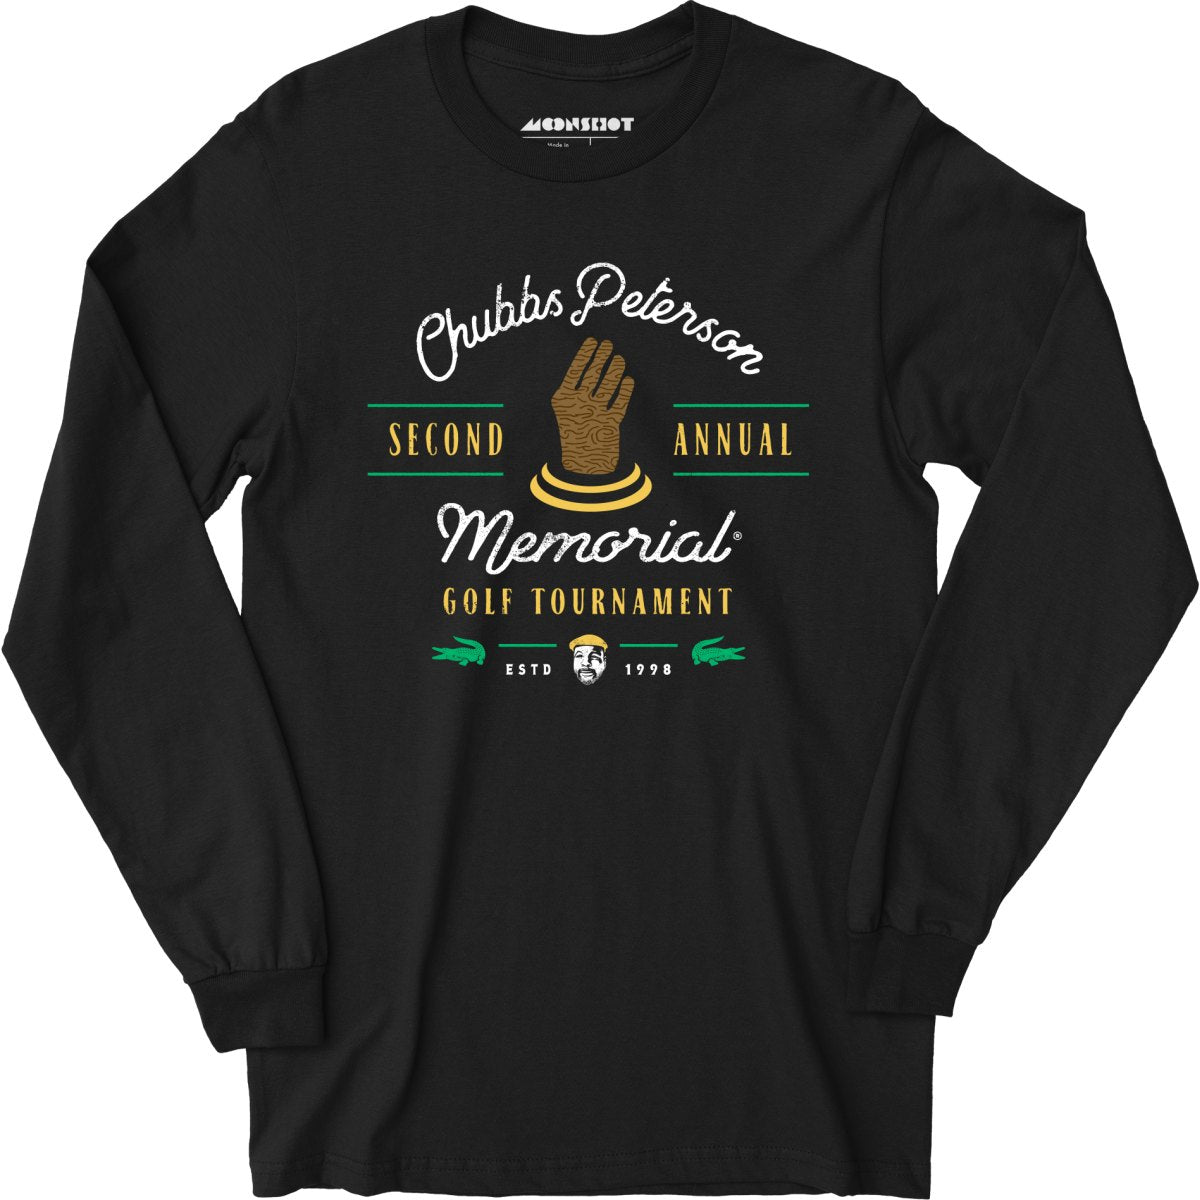 Chubbs Peterson Memorial Golf Tournament - Long Sleeve T-Shirt